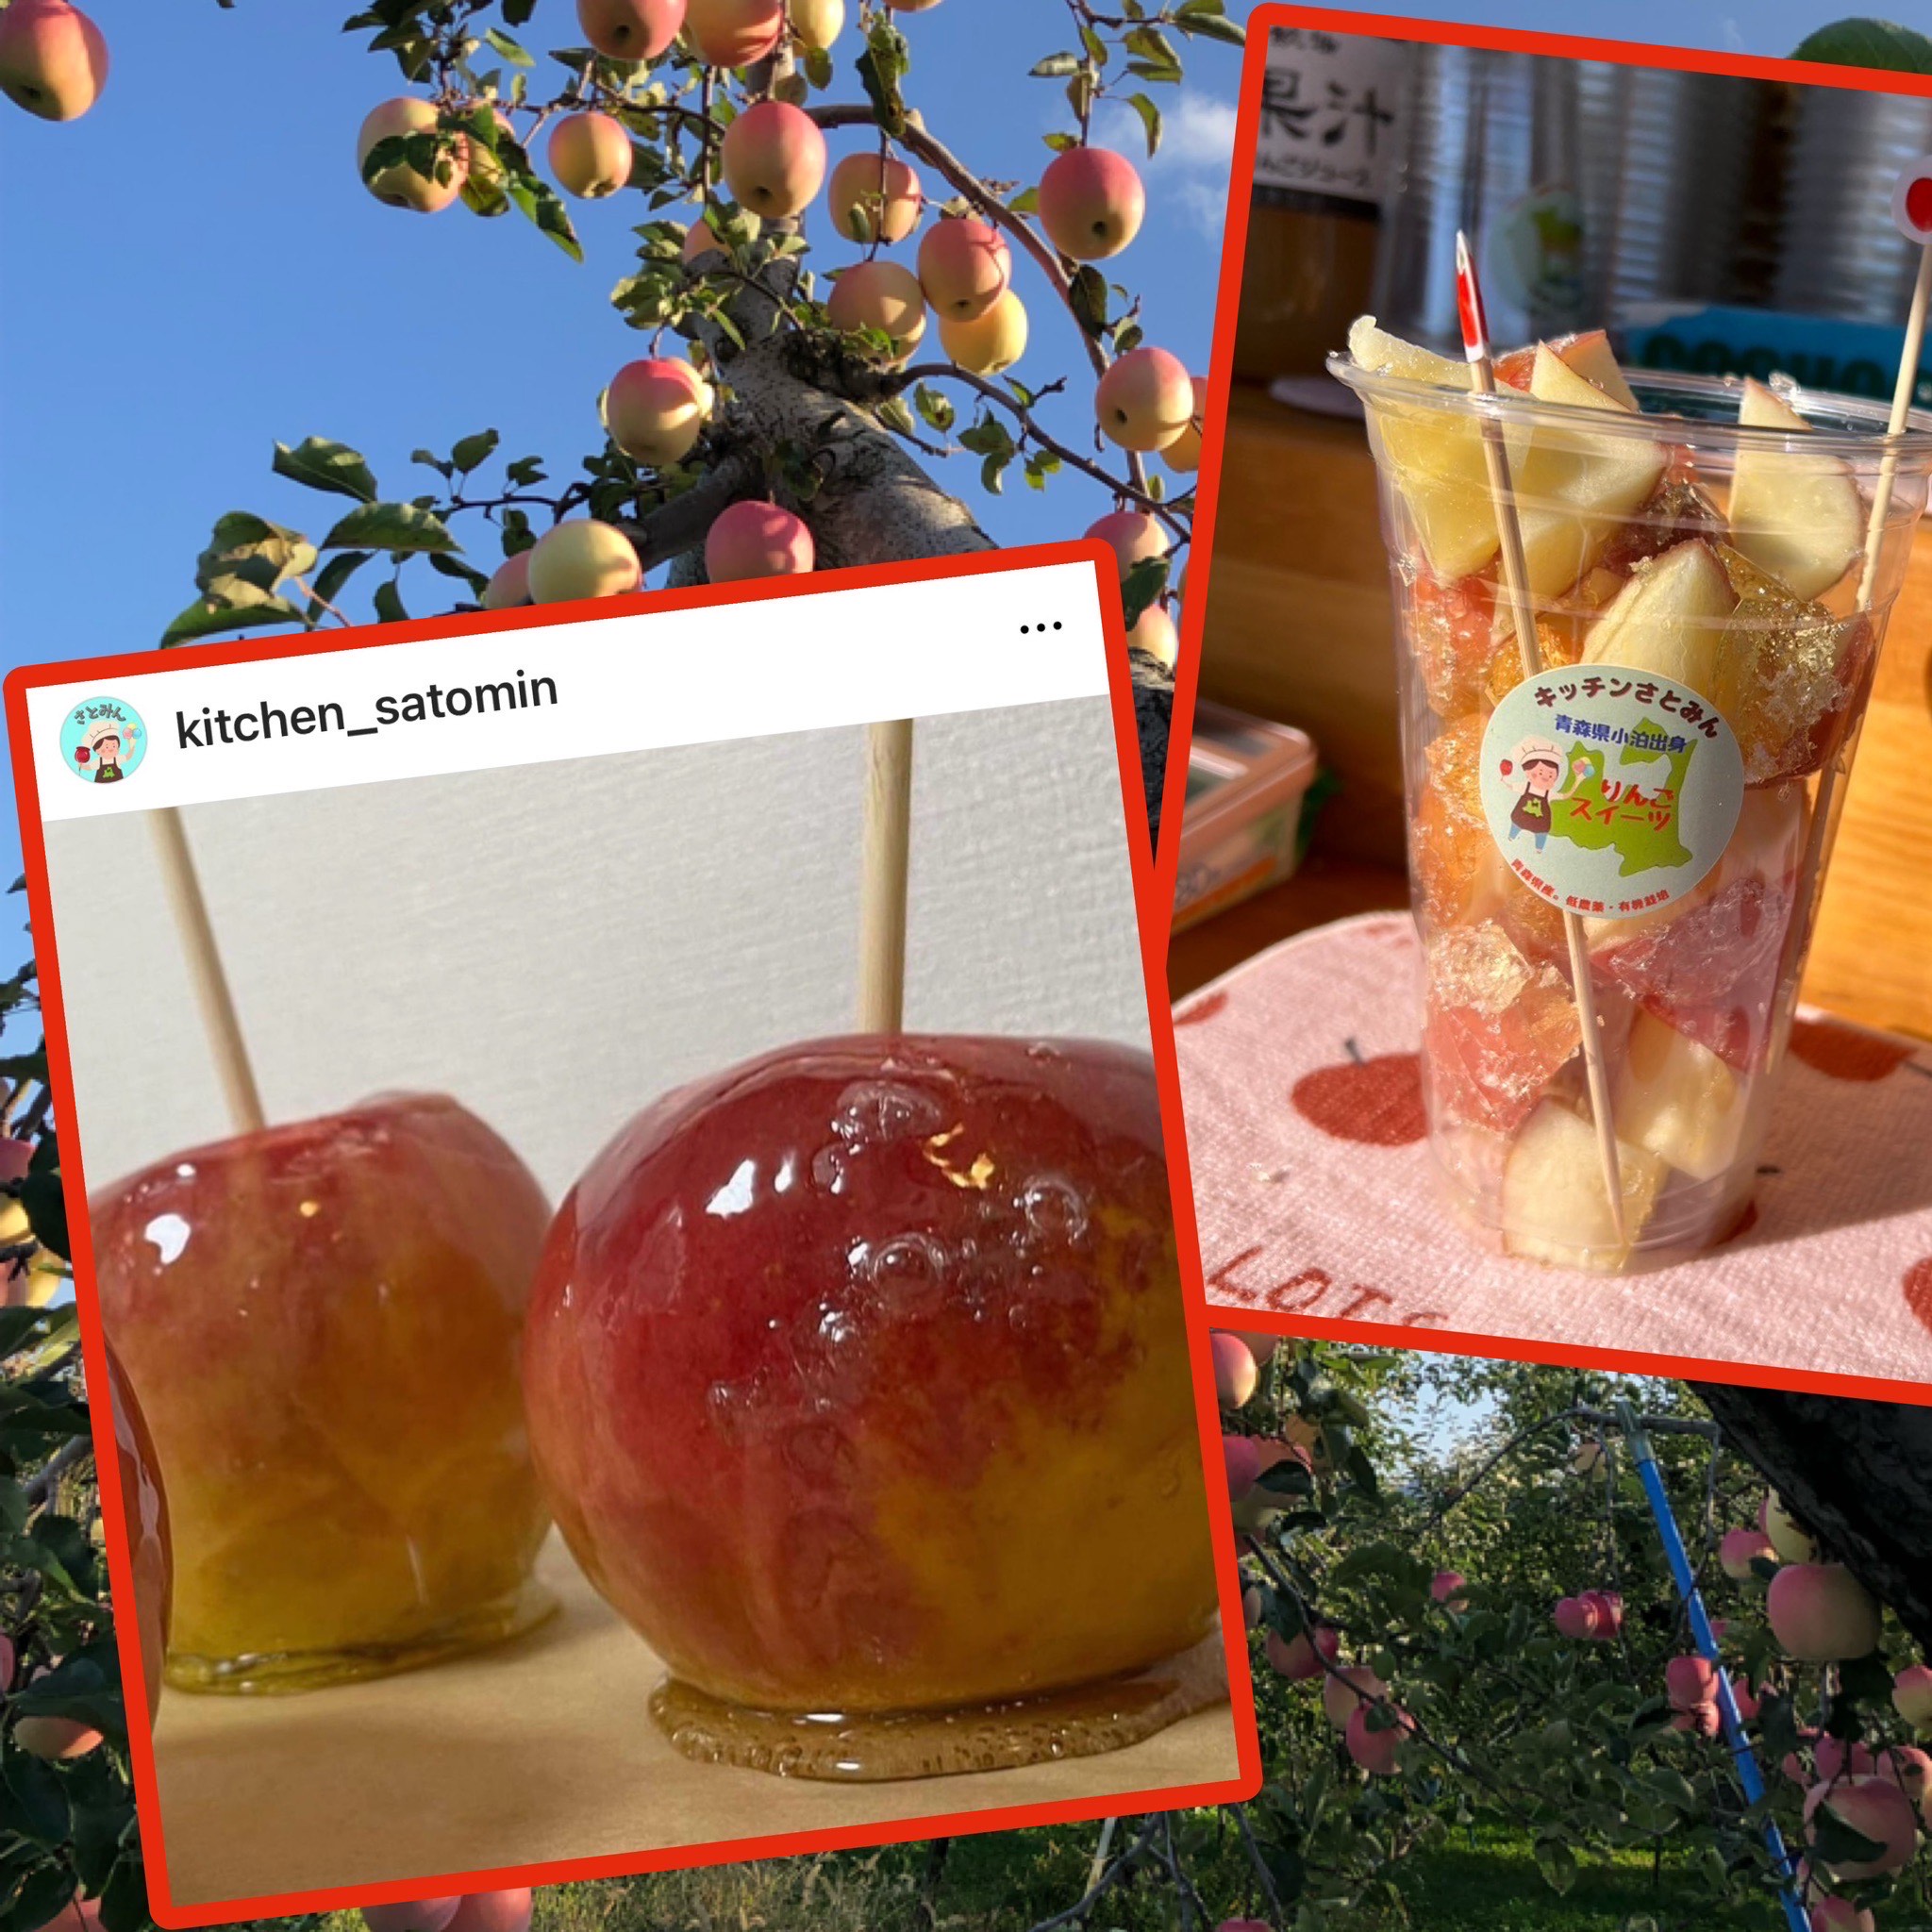 旬のりんごを使った 「りんご飴」などのりんご菓子・青森のソウルフフード「カランカランアイス」を販売しています！